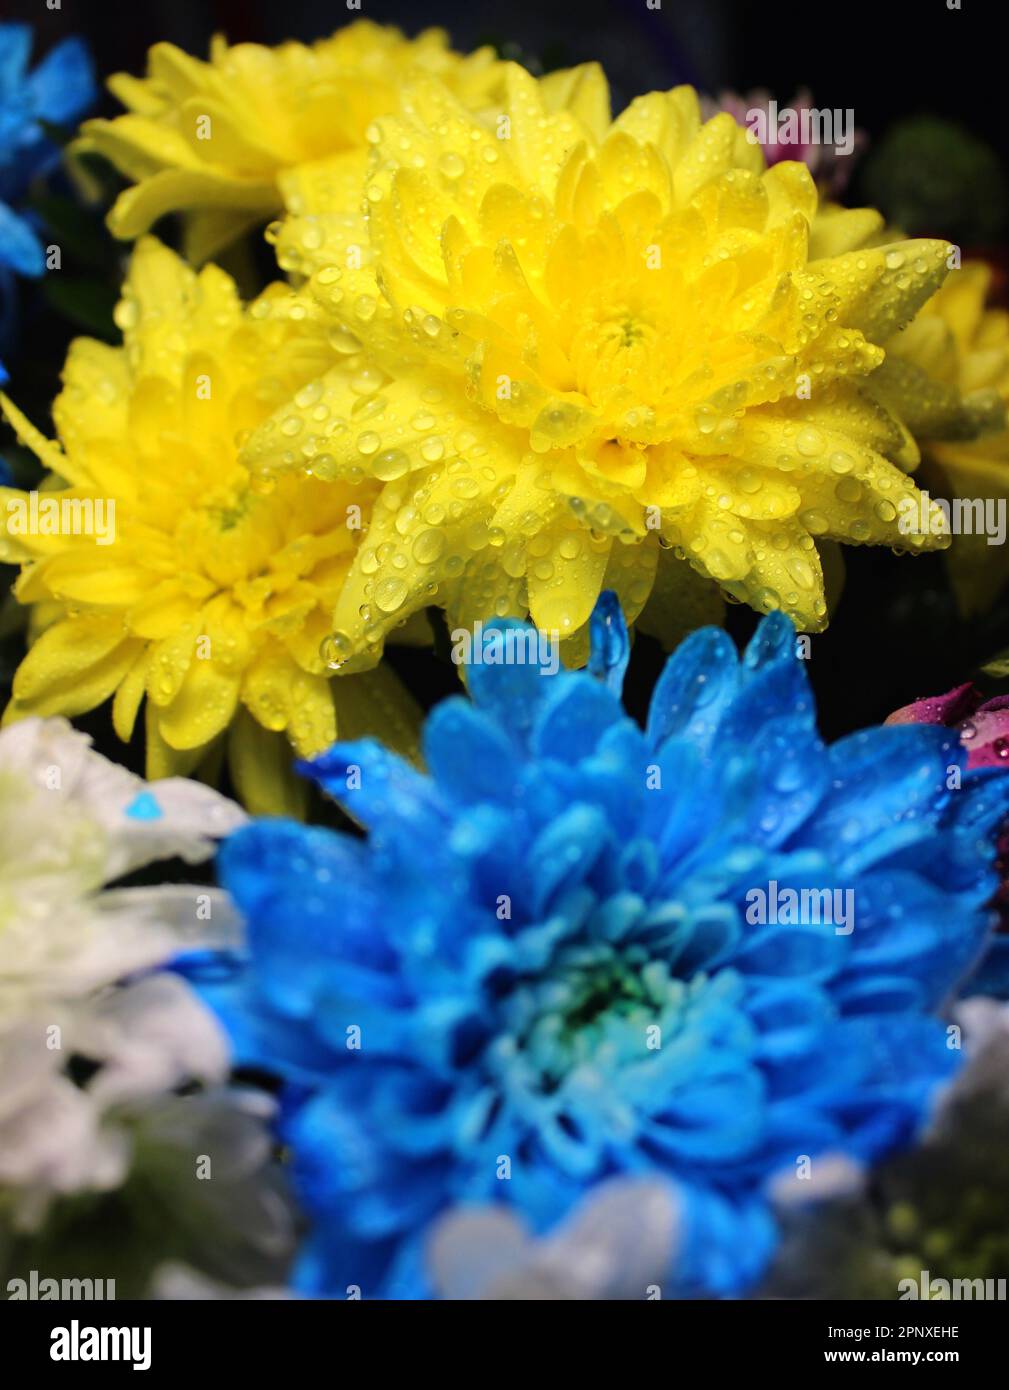 Bouquet aus farbenfrohen frischen Chrysanthemen mit Wassertropfen auf einer Blume aus einem Wassersprühgerät Stockfoto